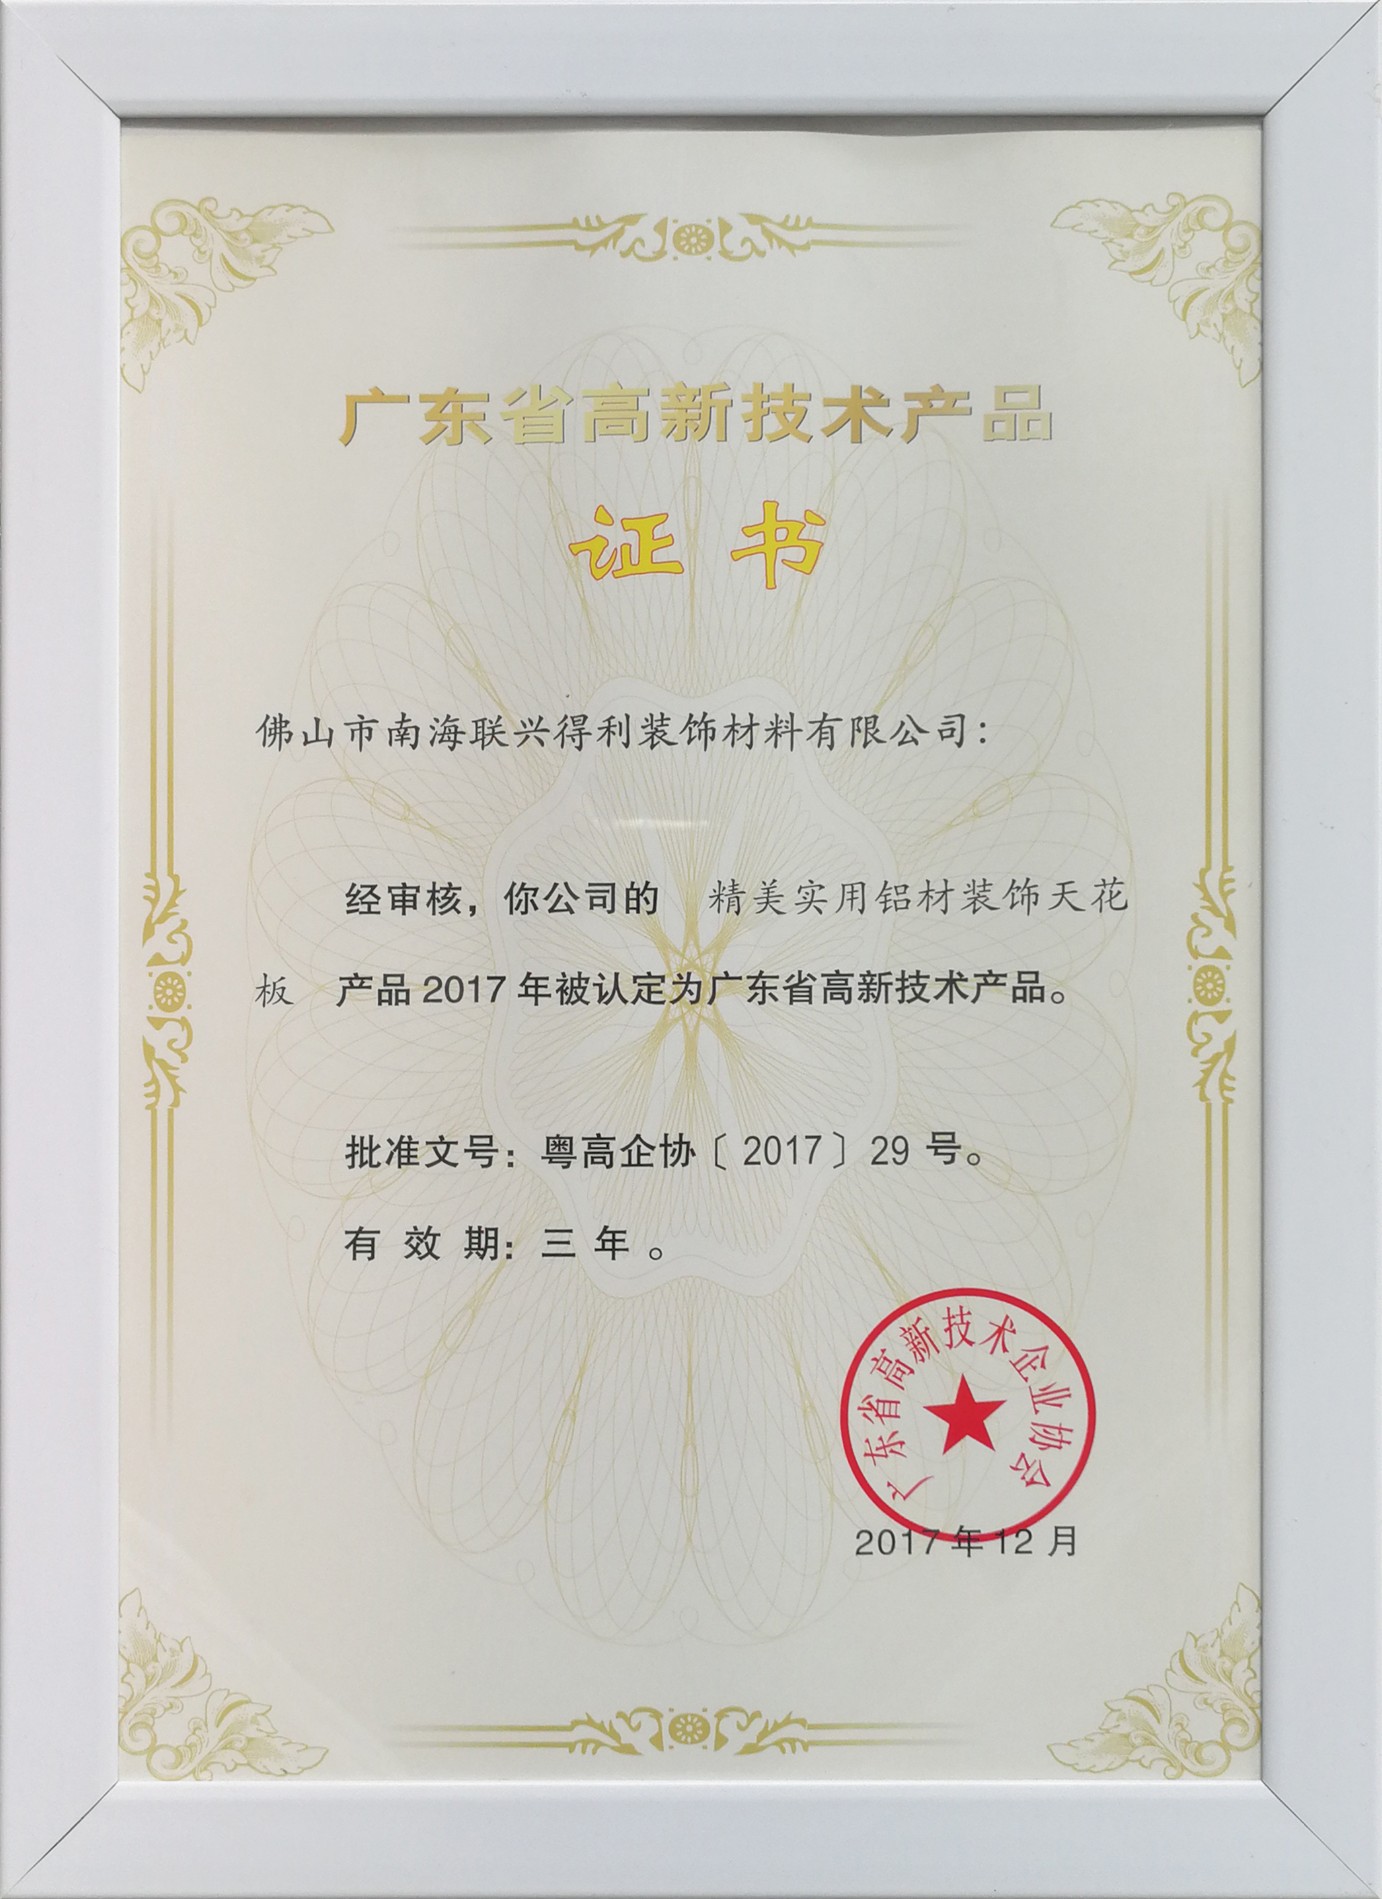 Guangdong High Tech-Certificate